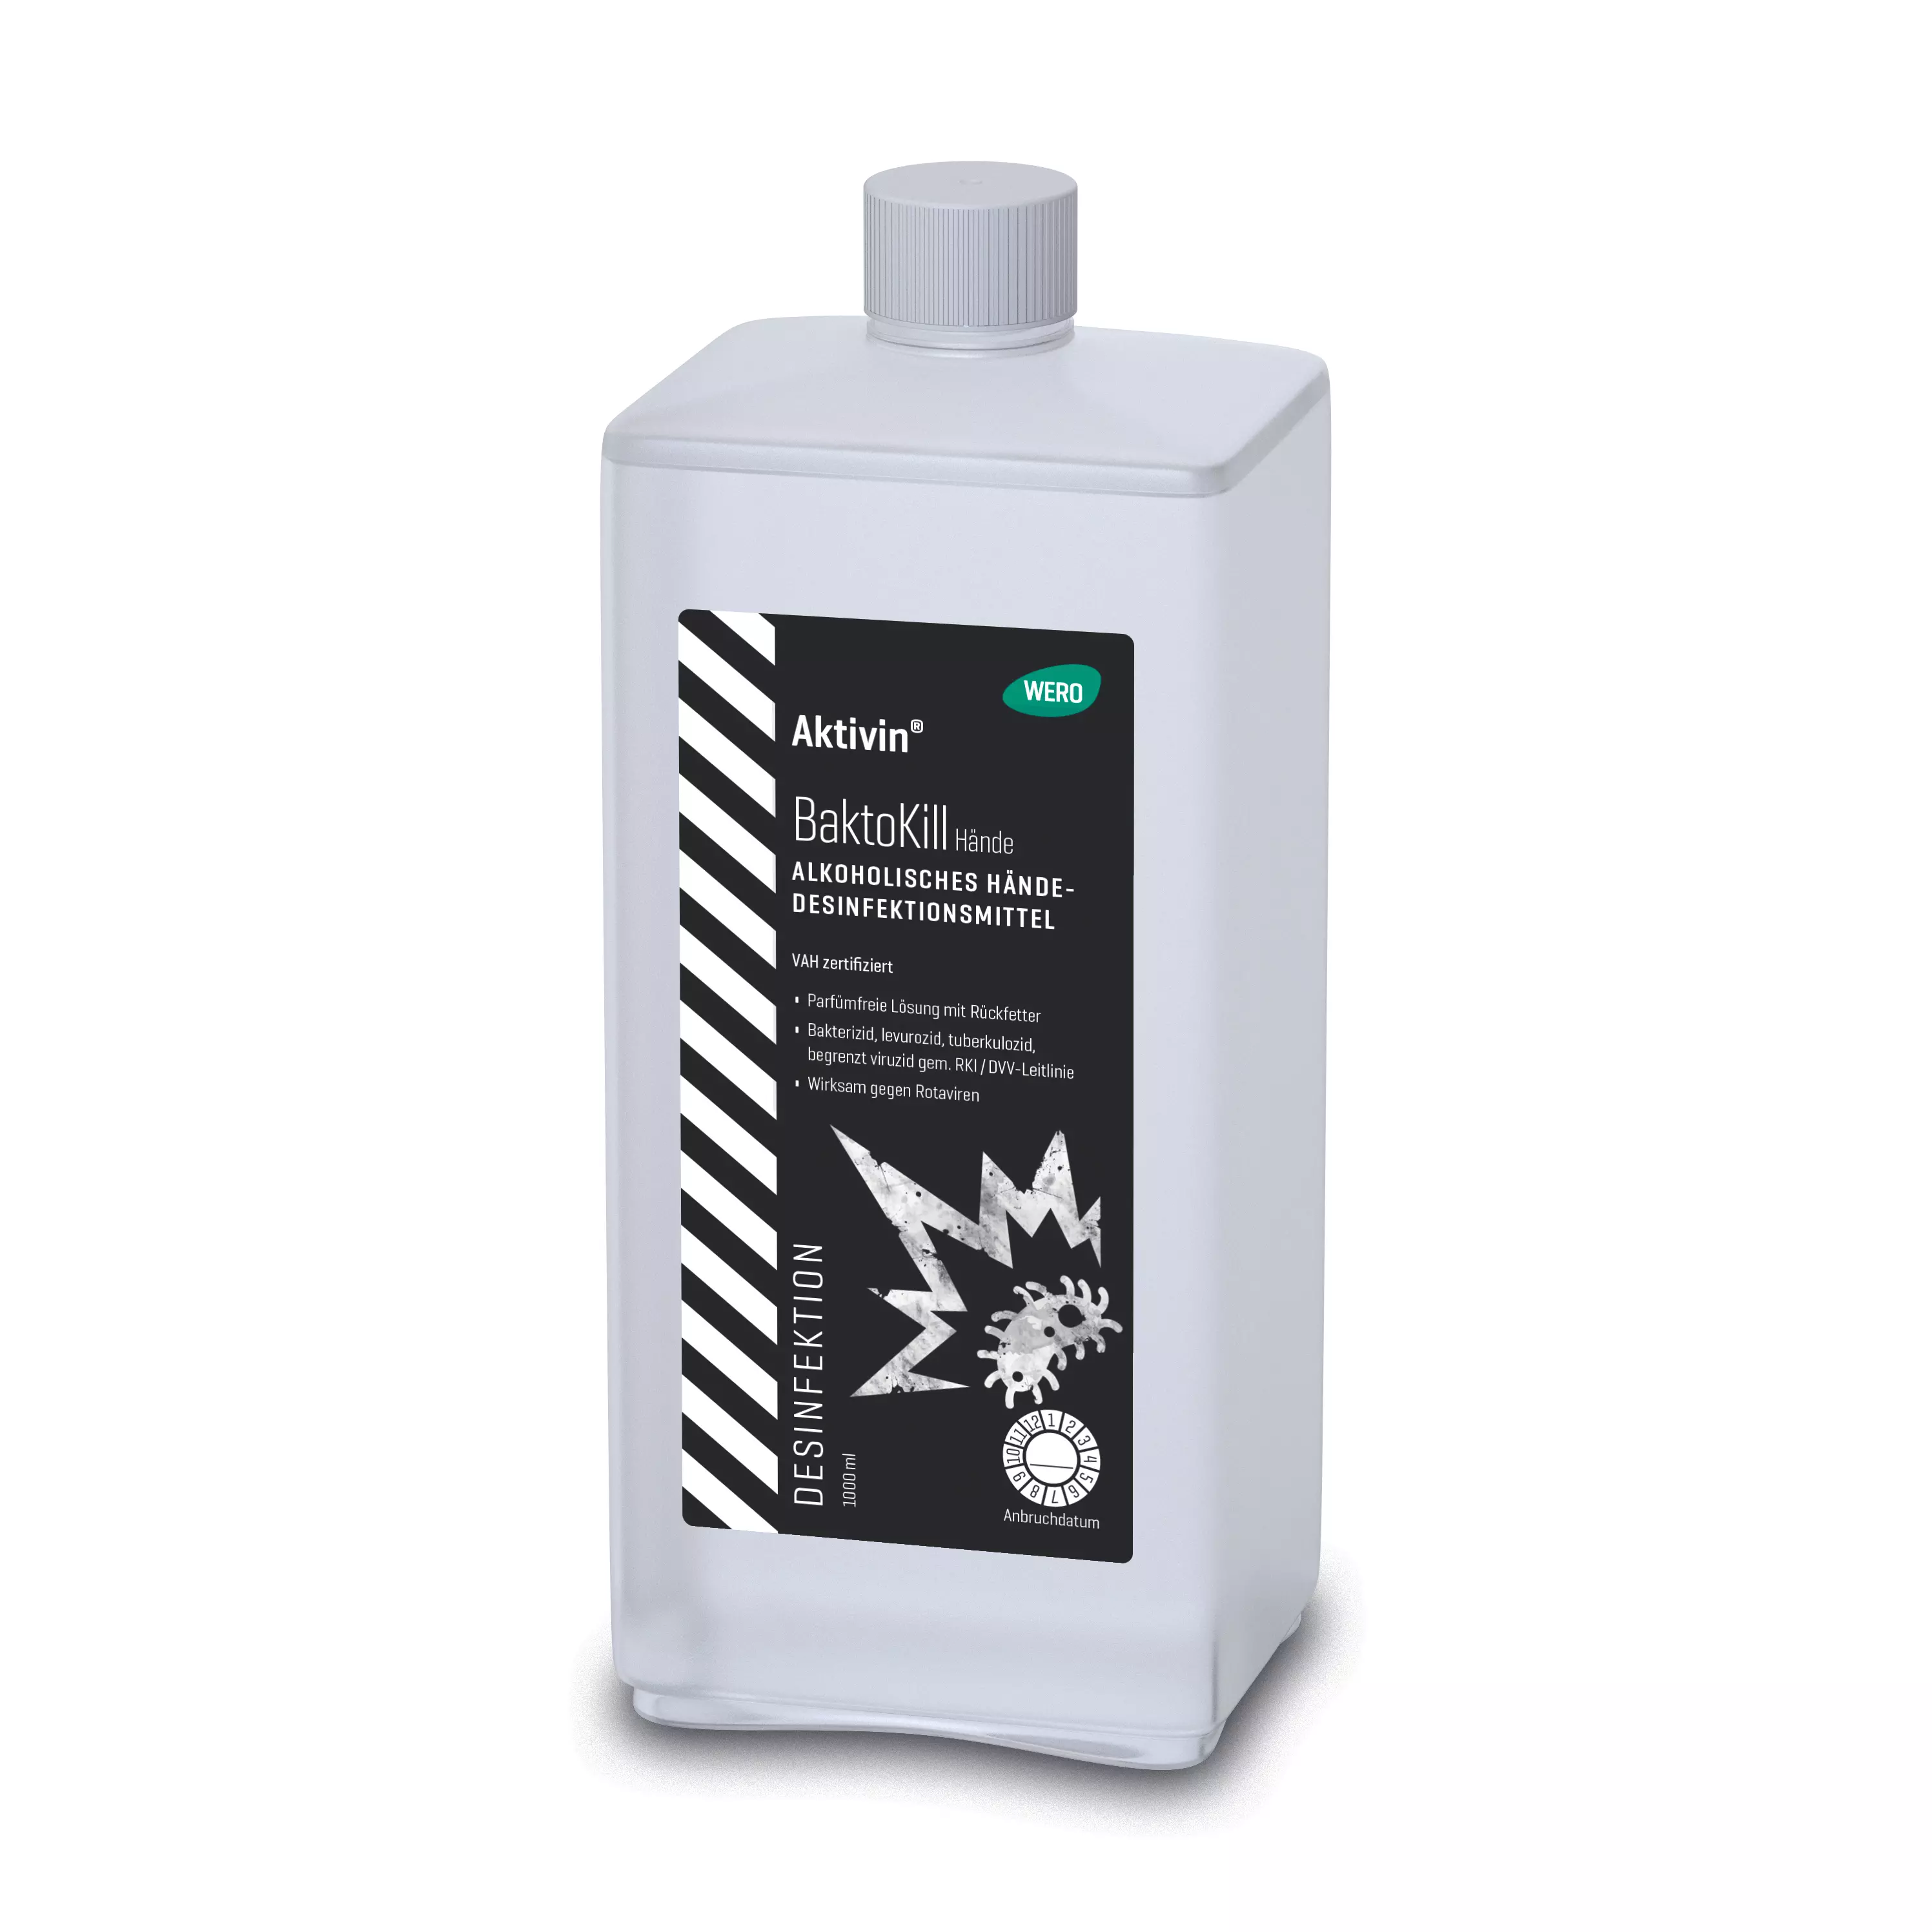 Hand disinfectant Aktivin® BaktoKill - Euro bottle, 1,000 ml